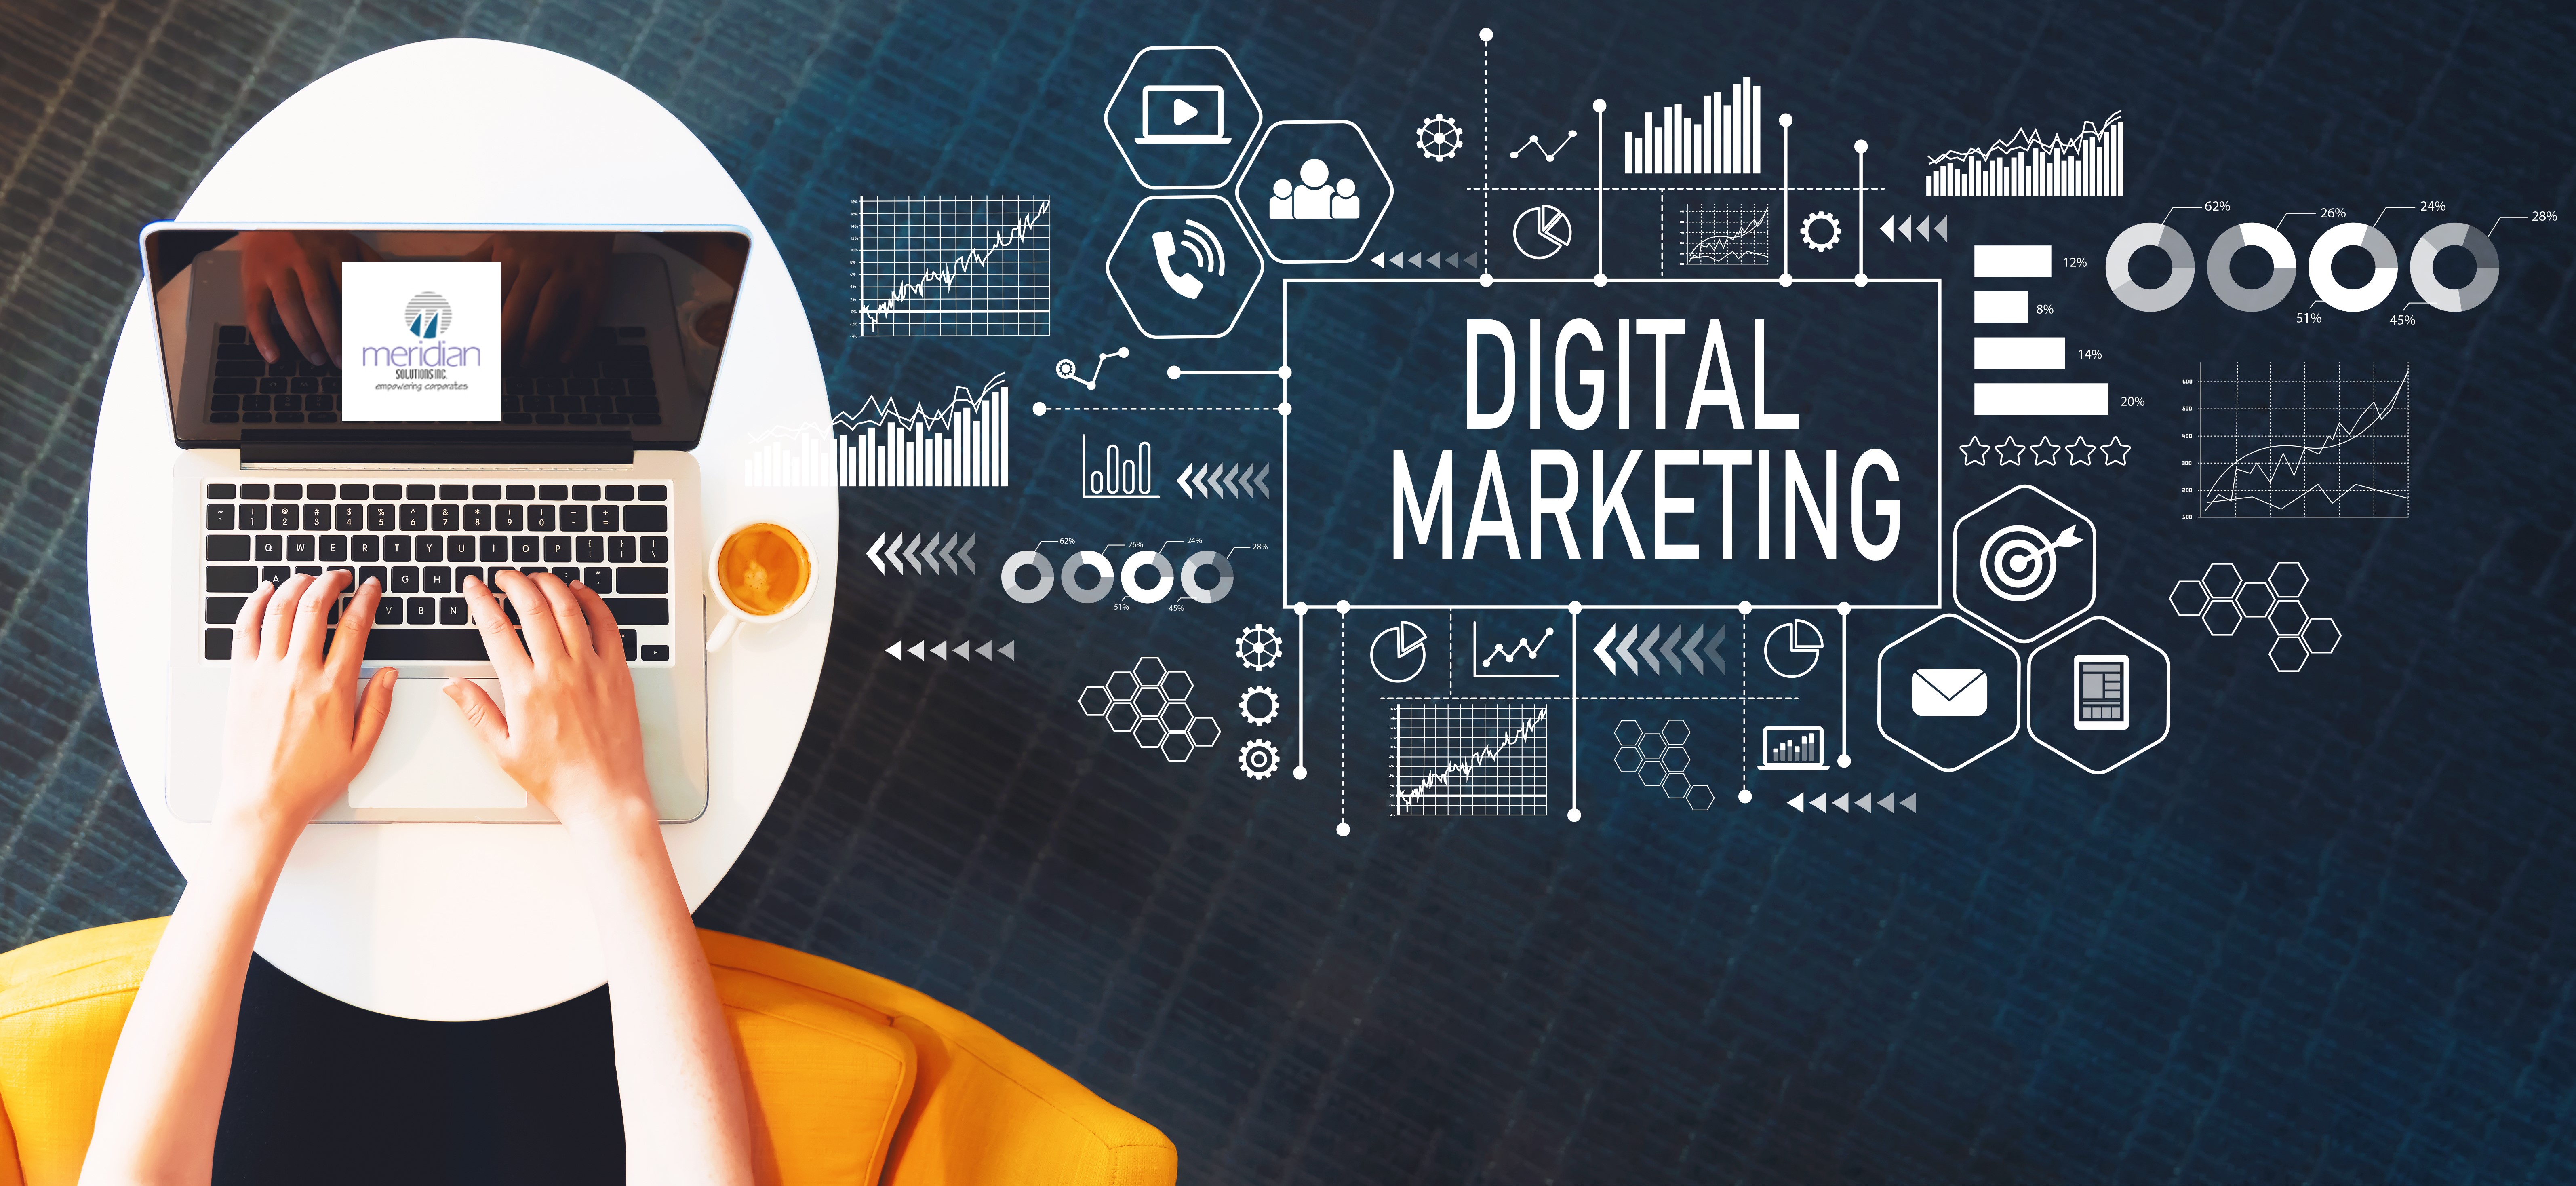 Digital marketing services- SEO, SMM, SEM, etc..